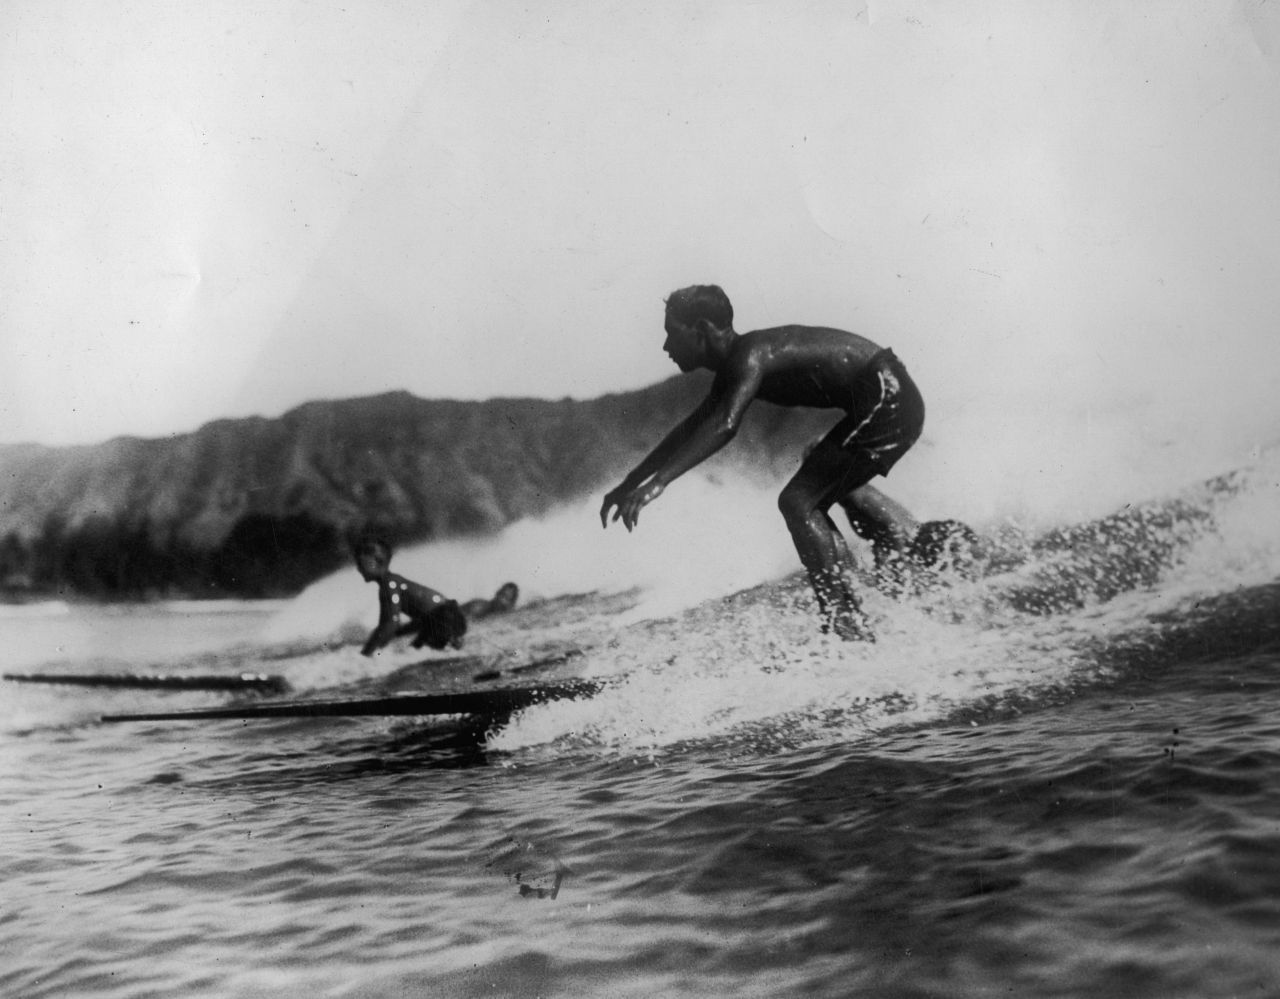 Mit der Seefahrt gelangte das Wellenreiten von Polynesien um 1720 nach Hawaii. Für die Hawaiianer:innen war es mehr als ein Hobby: Der Bau eines Surfbretts ging mit religiösen Ritualen einher, um sich den Schutz und das Wohlwollen der Götter zu sichern. Und das Holz musste vom "richtigen" Baum stammen. Im Zuge der Missionierung jedoch wurde das Surfen 1823 verboten - aber es verschwand niemals ganz. Als 1908 der erste Surf-Cl